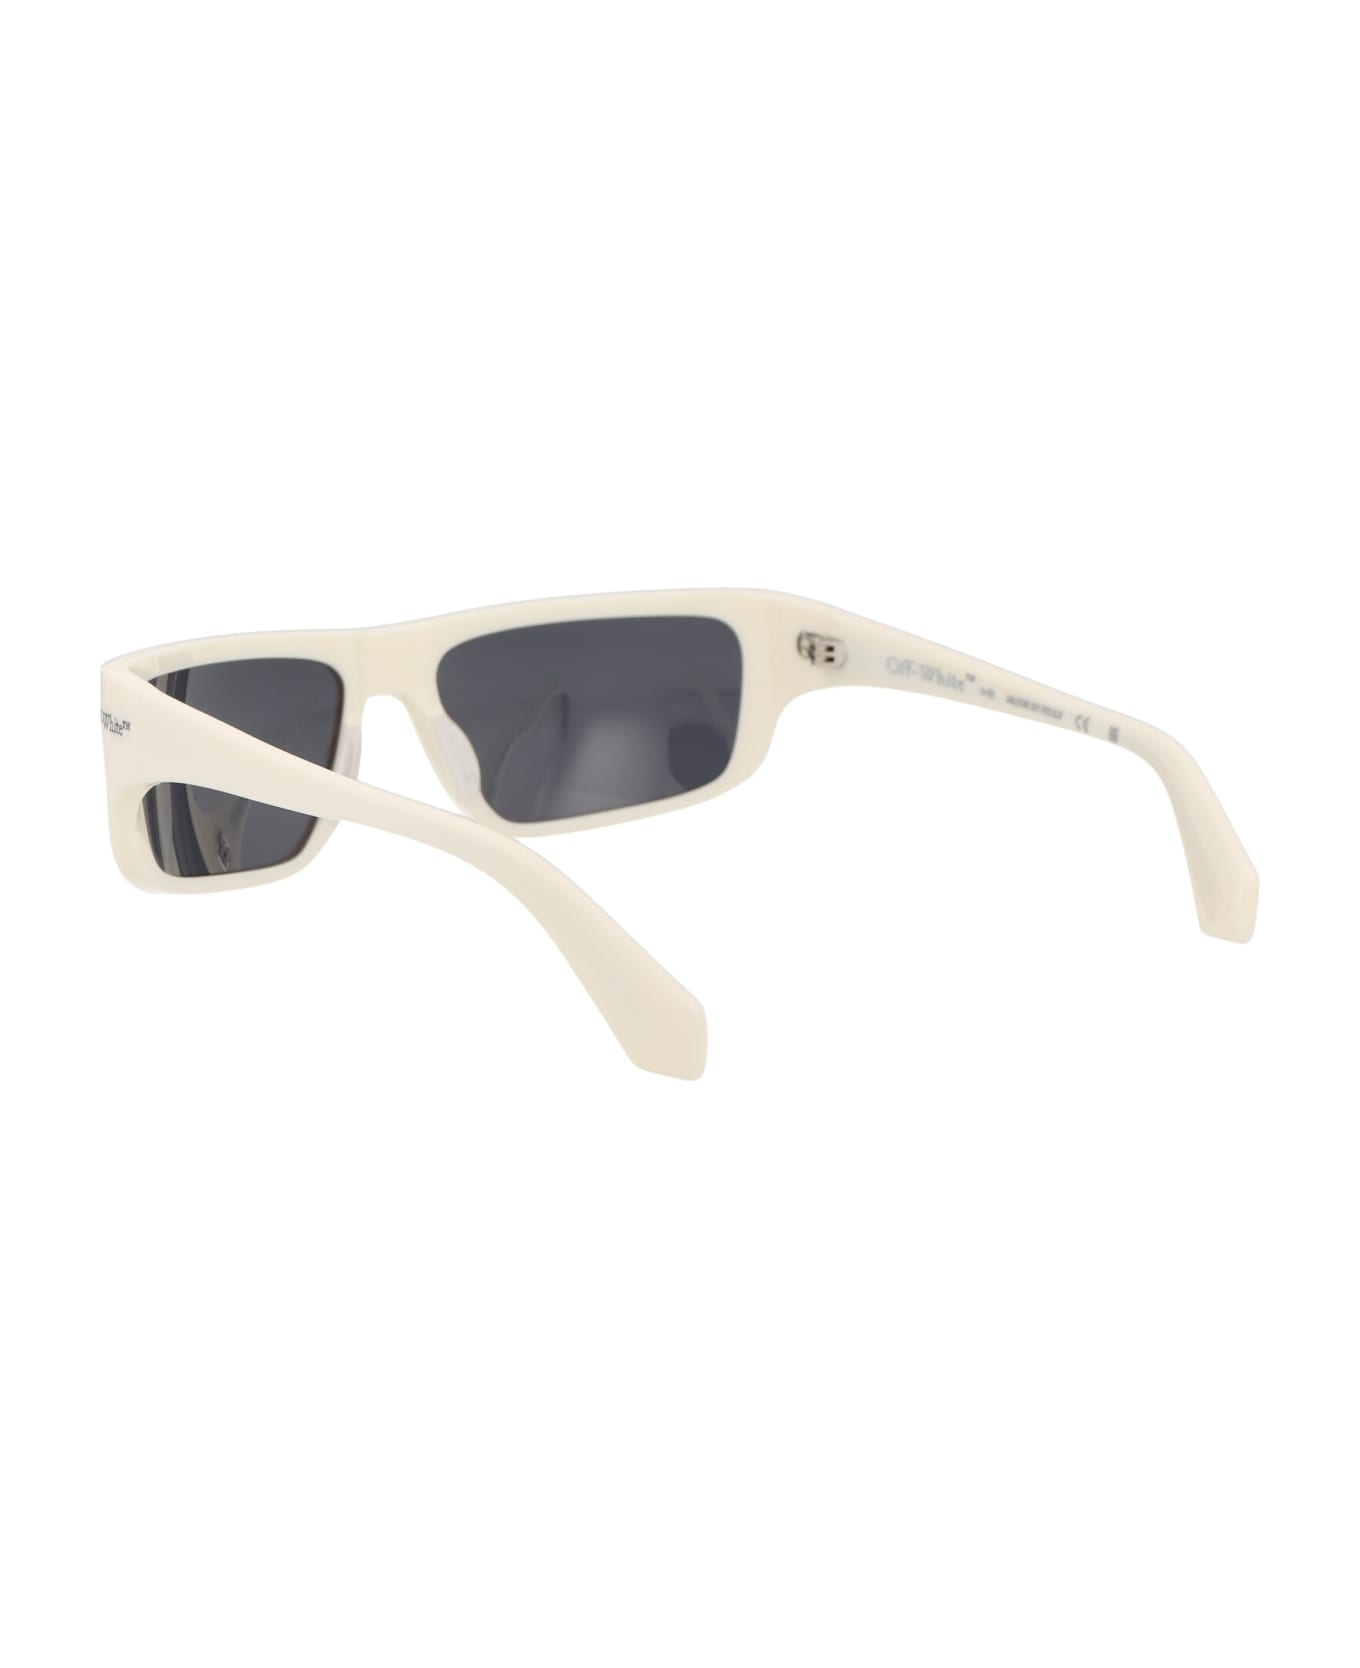 Off-White Bologna Sunglasses - 0107 WHITE